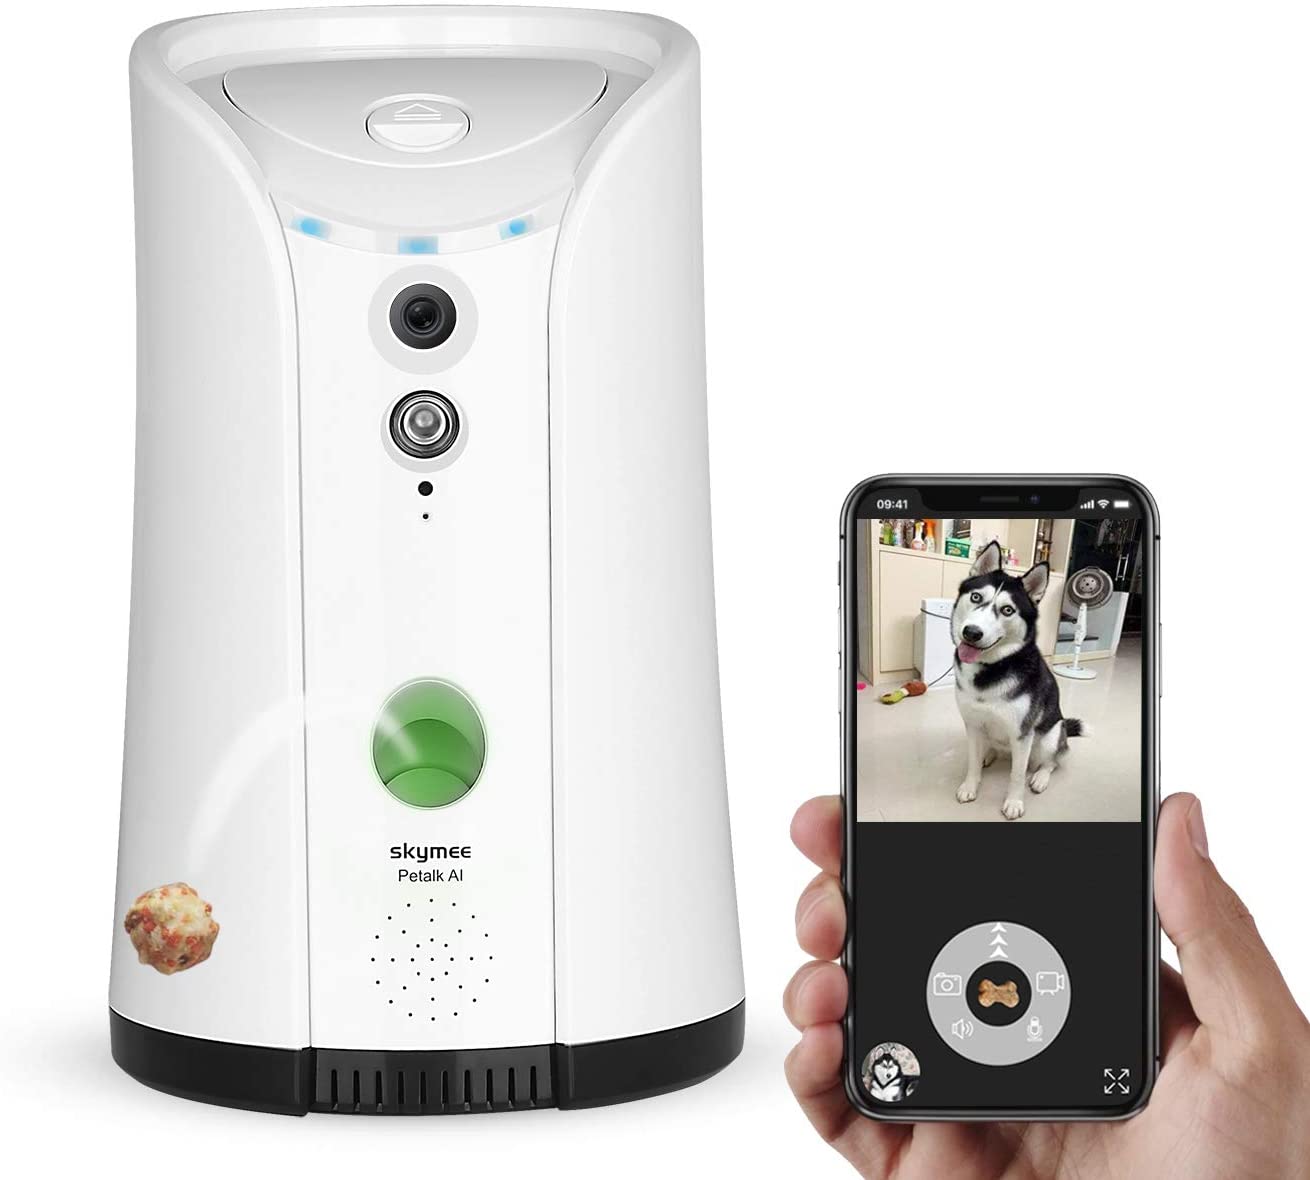  SKYMEE Petalk AI Cámara para Perros,Lanzamiento de golosinas Cámara remota para Mascotas WiFi con audio bidireccional y visión nocturna 